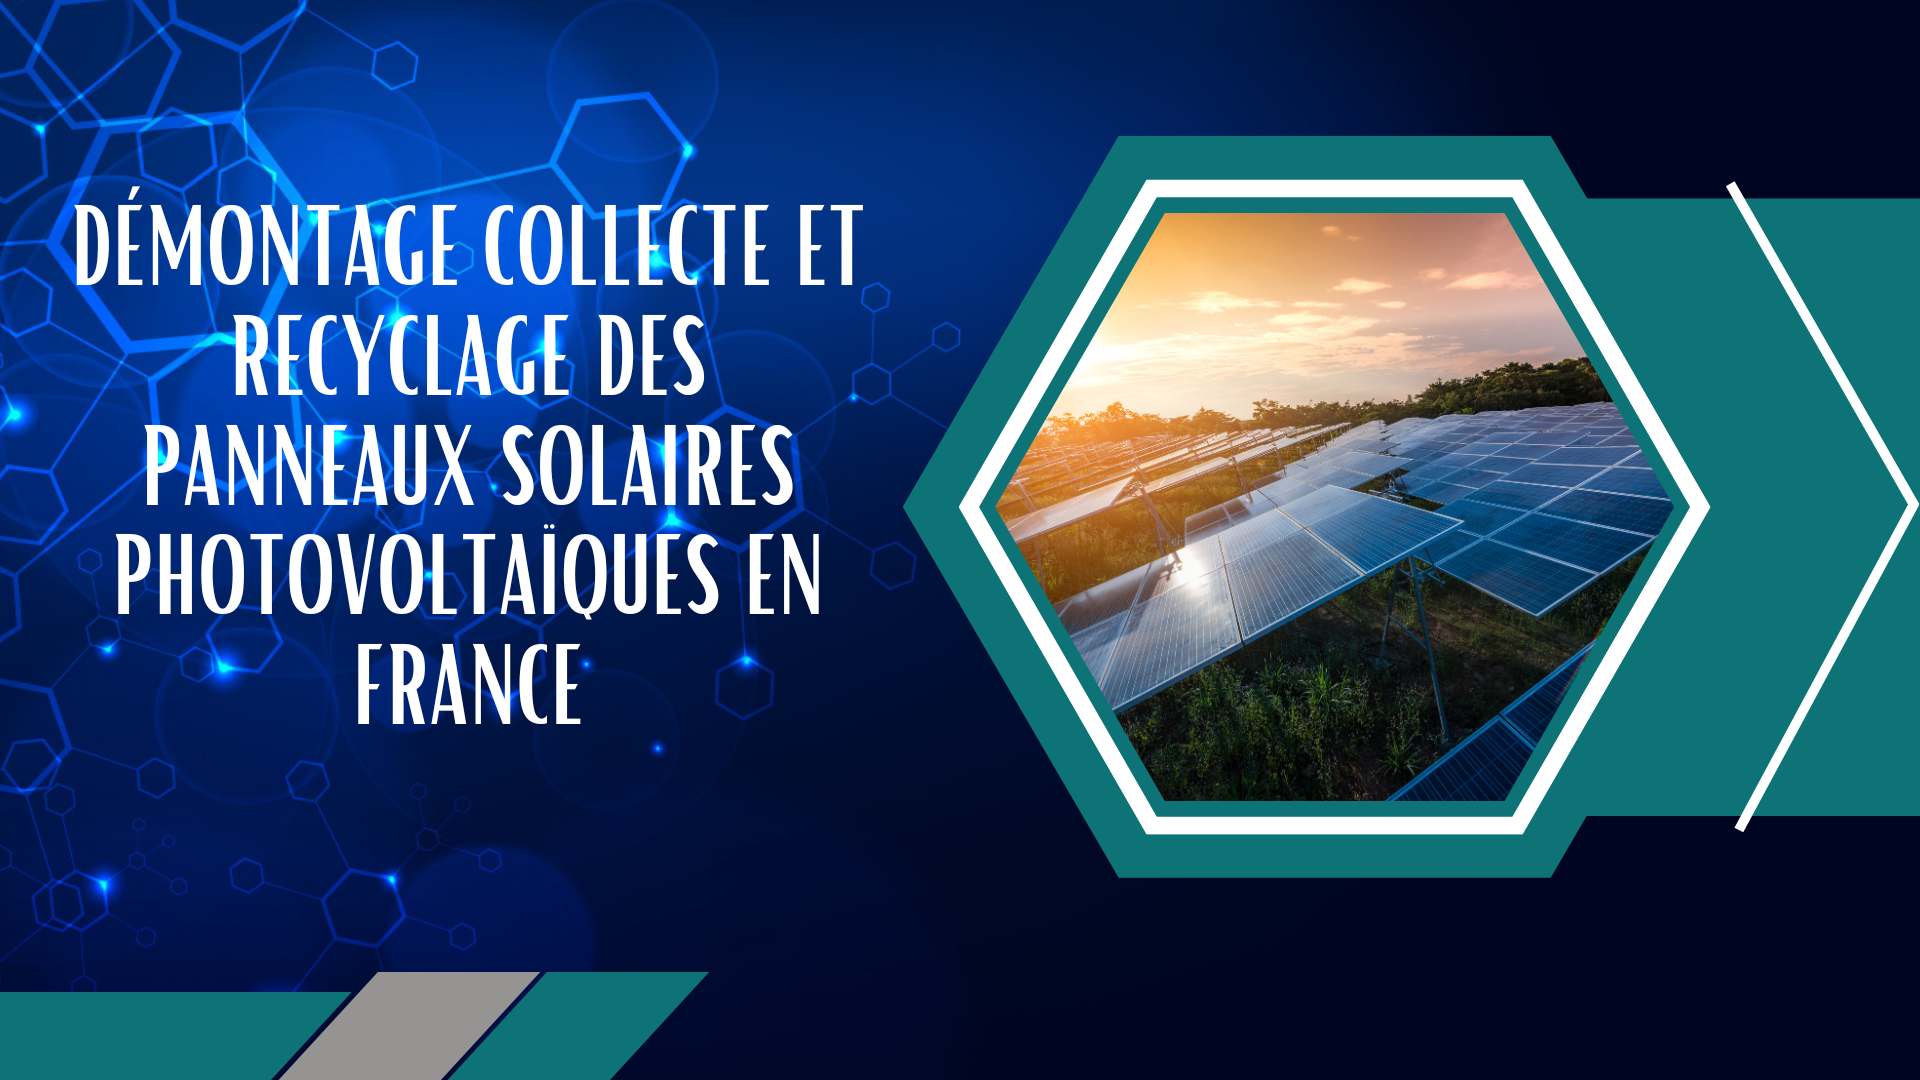 Démontage collecte et recyclage des panneaux solaires photovoltaïques en France